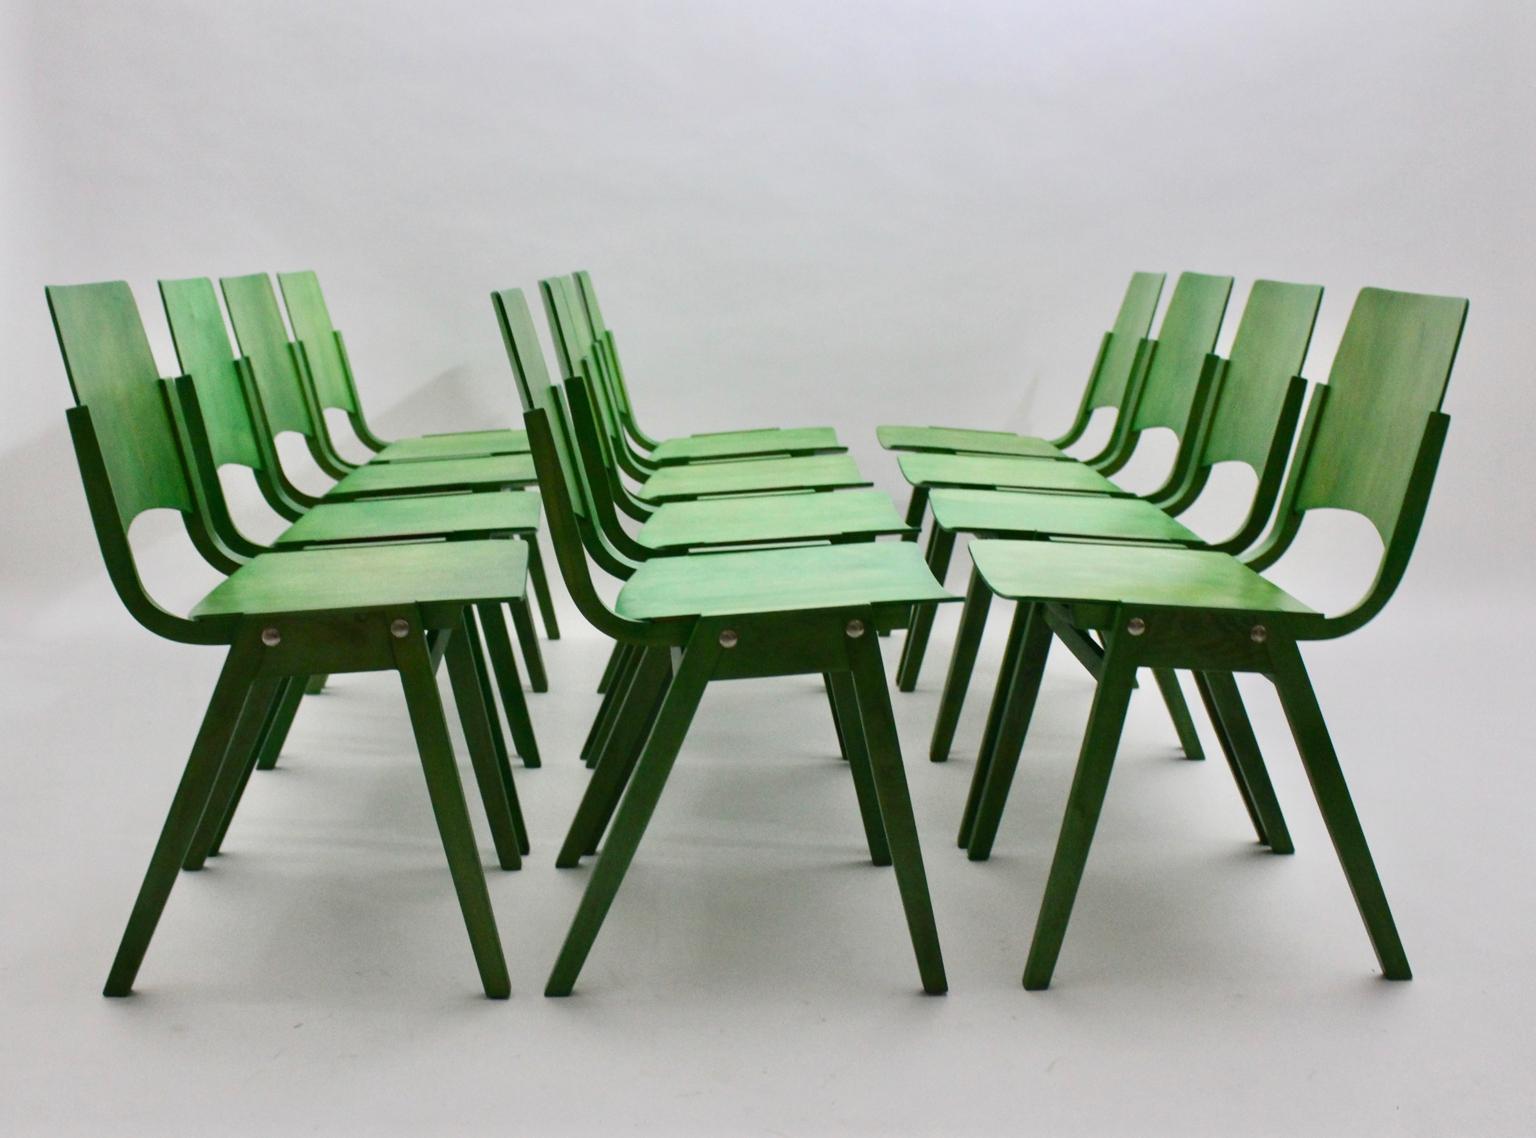 Ensemble vintage Mid Century Modern de 12 chaises de salle à manger en hêtre vert, modèle no. P7, qui sont également empilables, conçues par Roland Rainer pour la Stadthalle (arrière-scène) de Vienne en 1952 et exécutées par Emil & Alfred Pollak